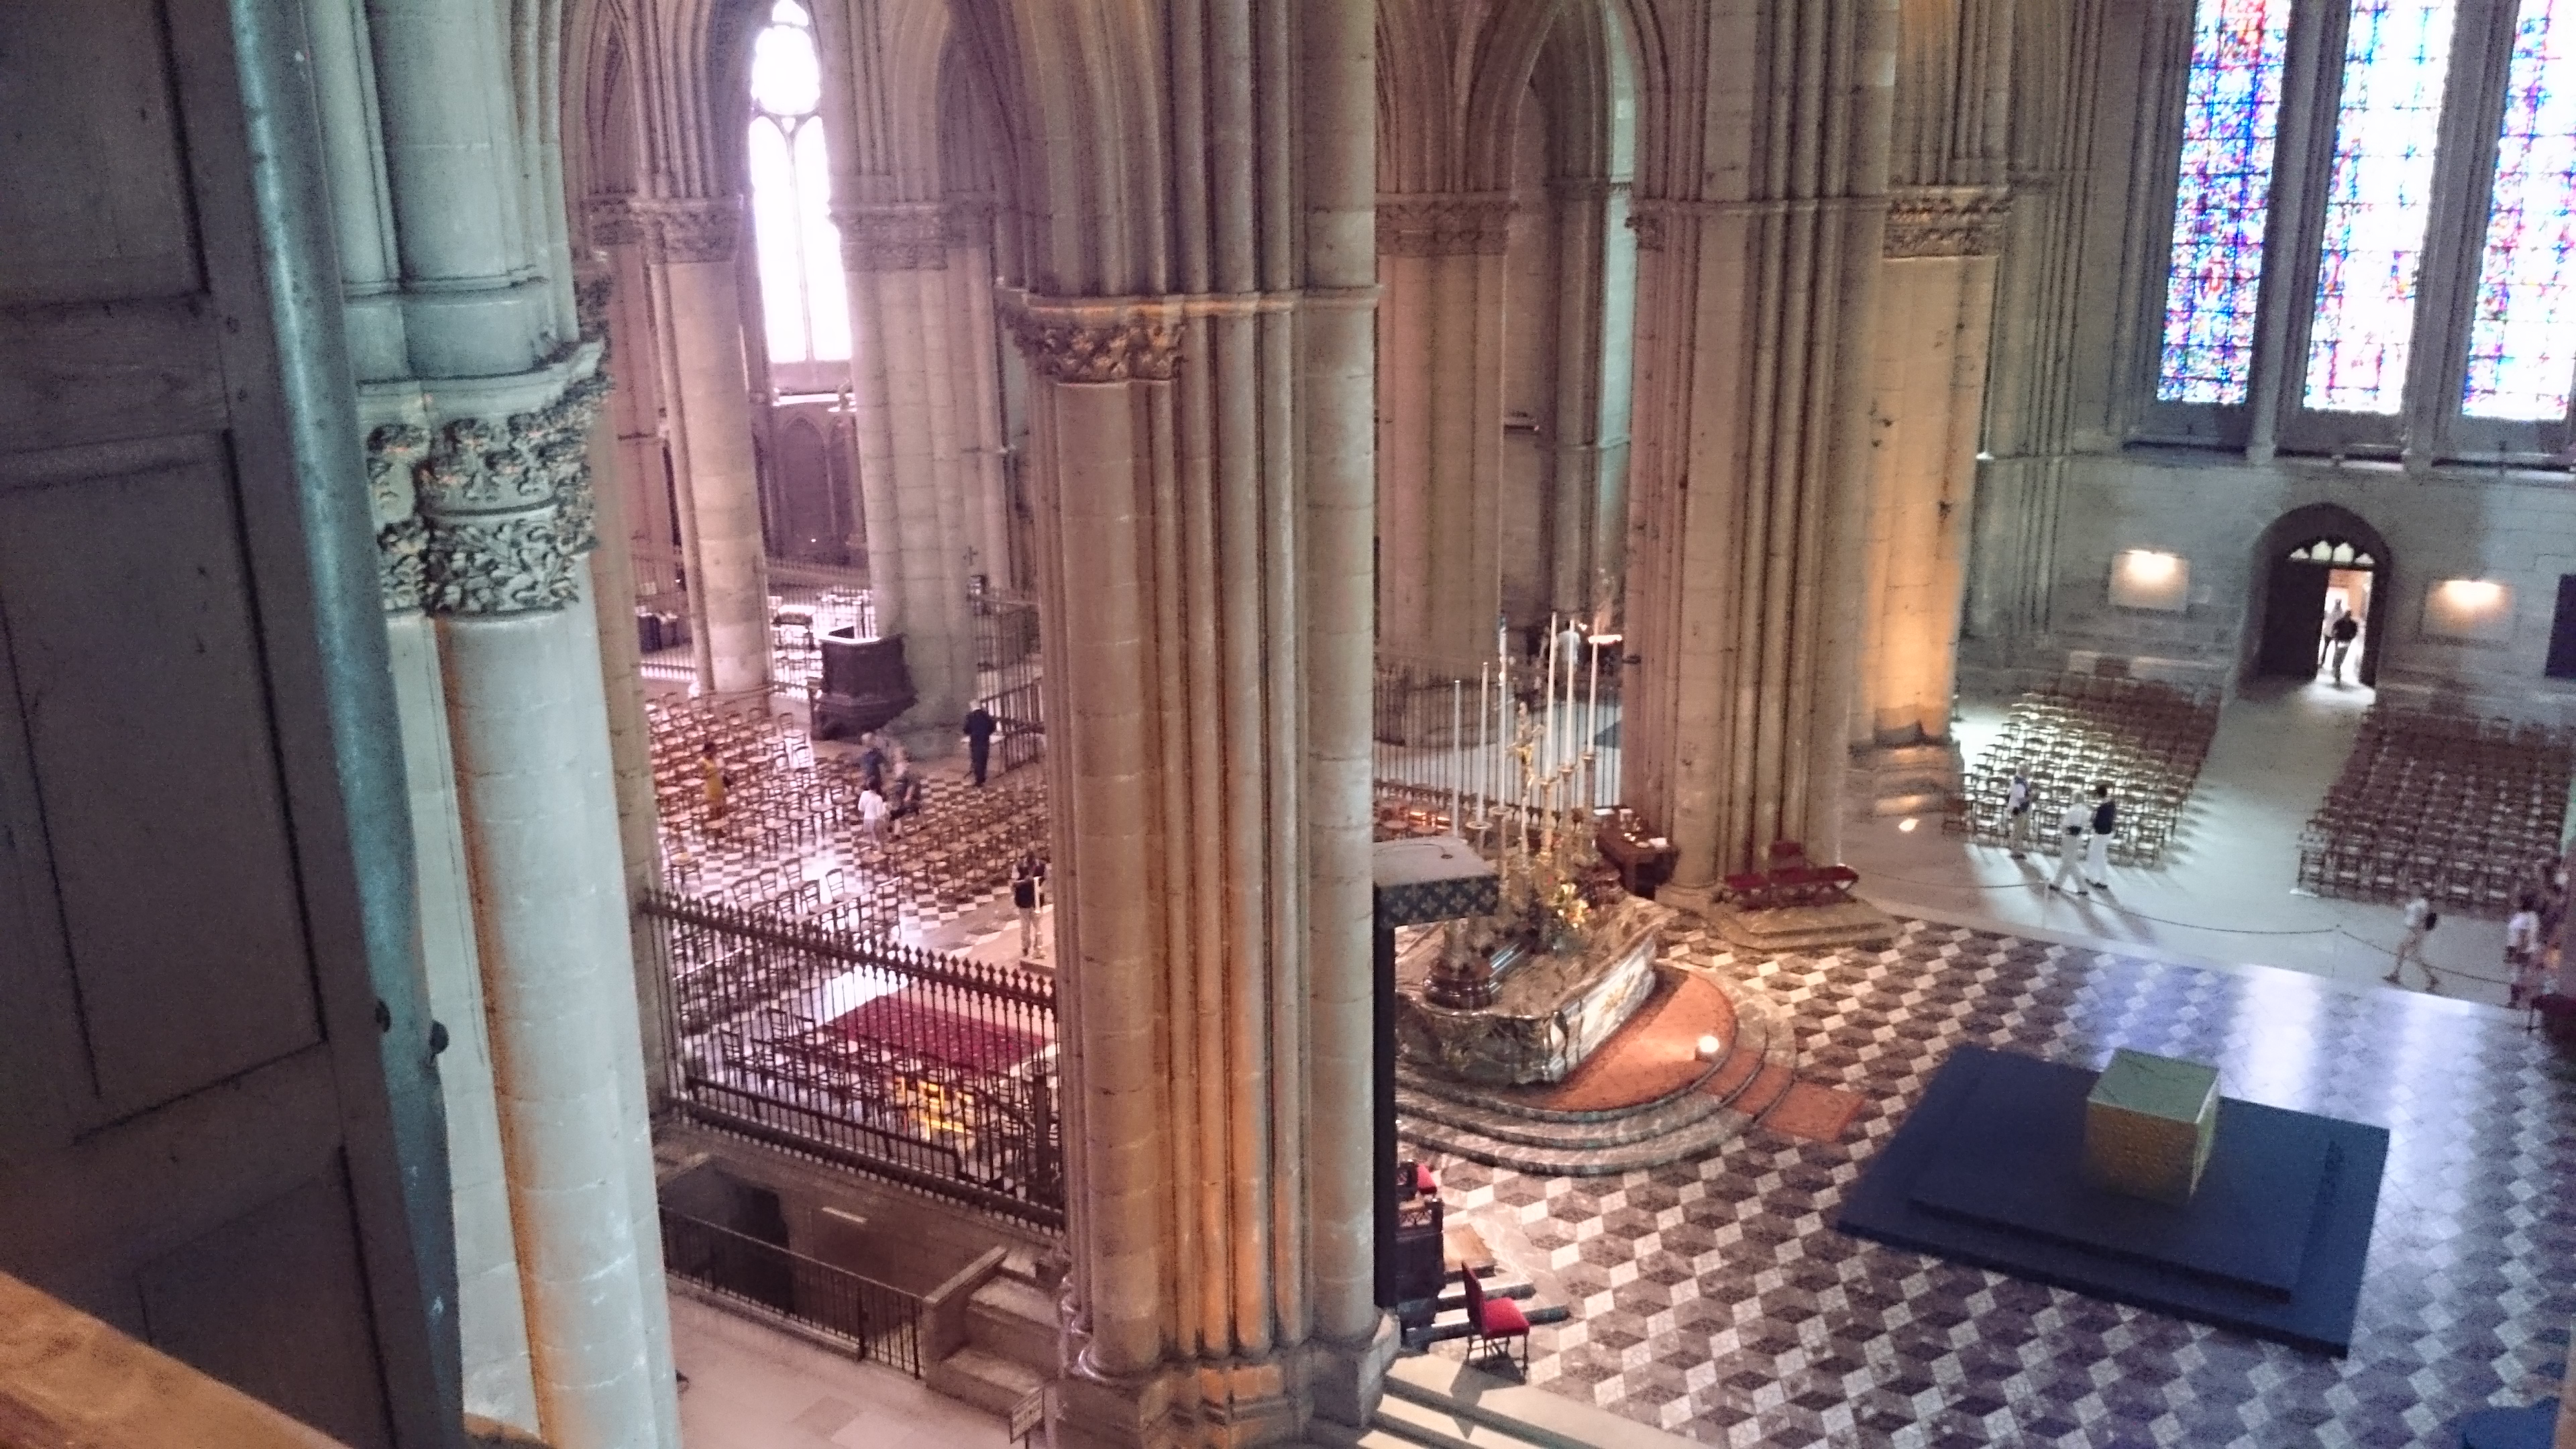 vue de la cathédrale de Reims